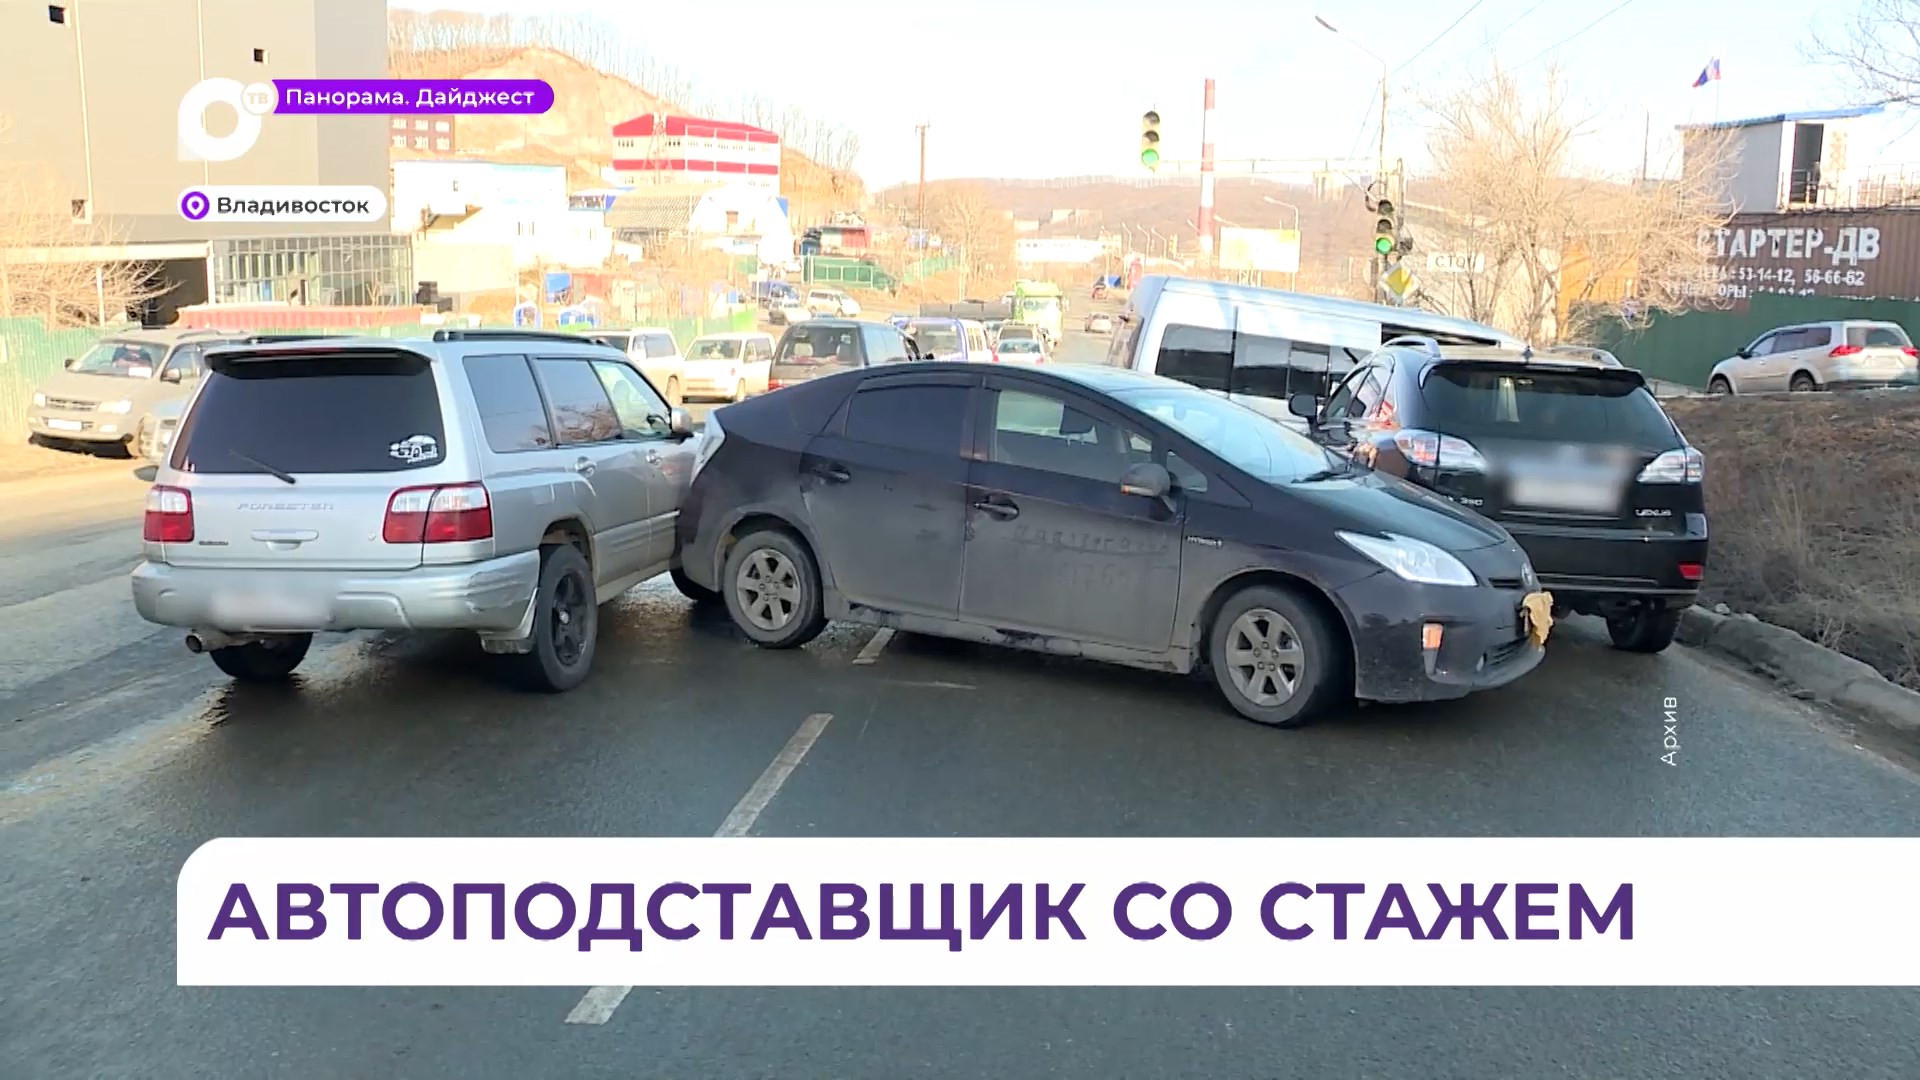 Организацию умышленных автоподстав пресекла полиция во Владивостоке